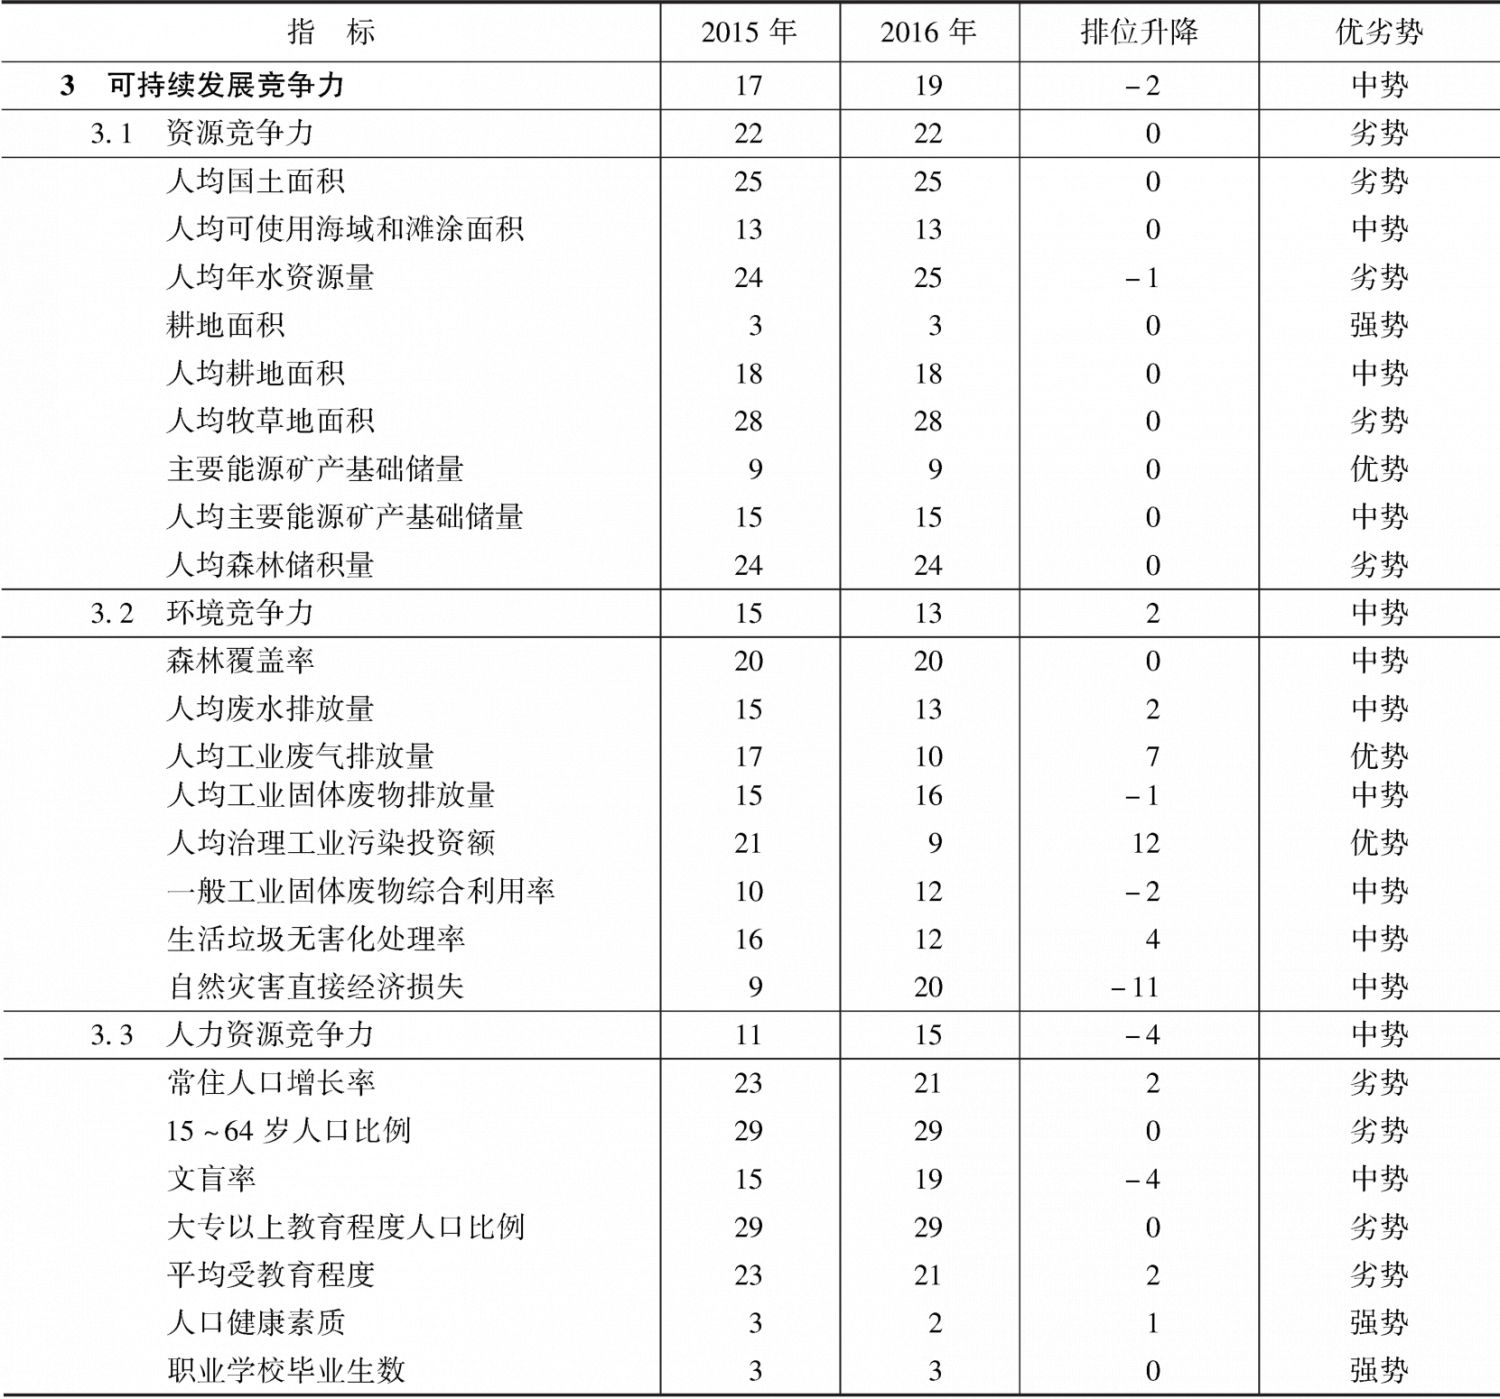 表16-7 2015～2016年河南省可持续发展竞争力指标组排位及变化趋势